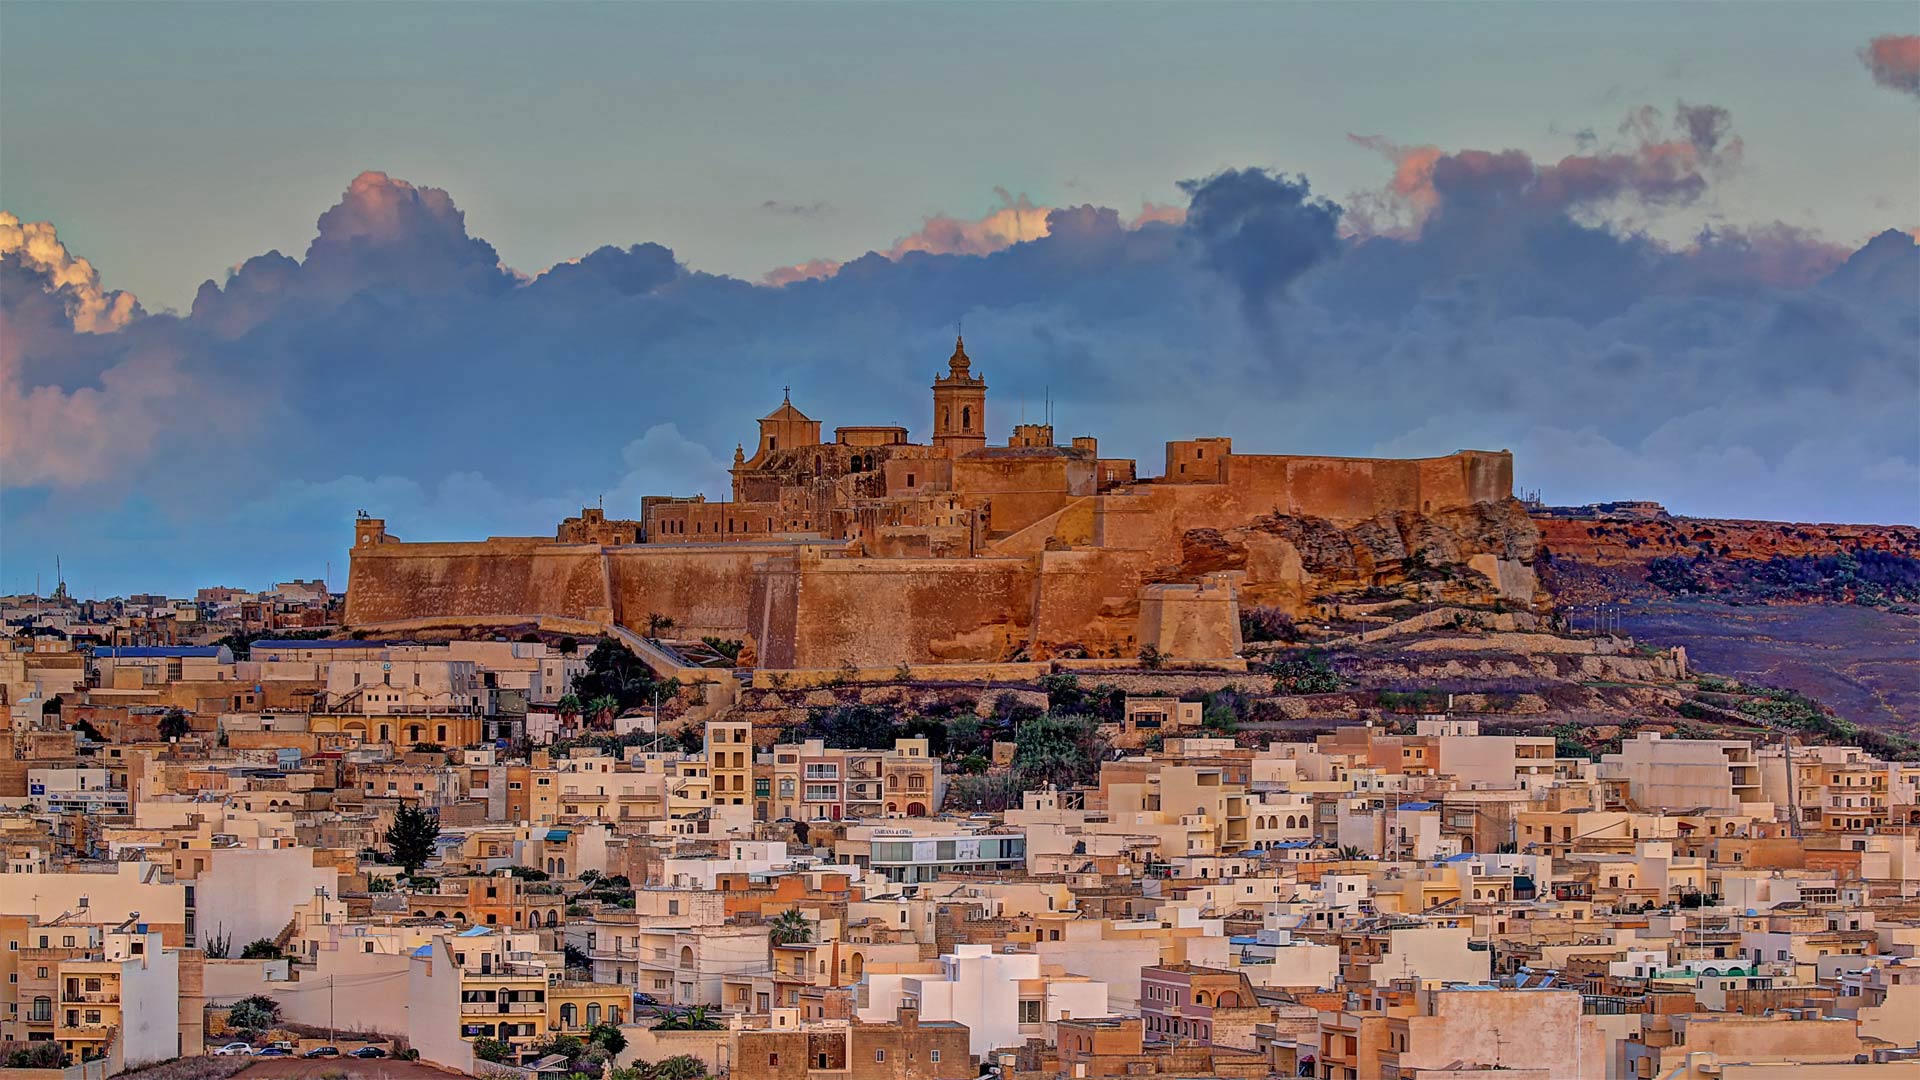 The Cittadella on the island of Gozo, Malta - Davide Seddio/Getty Images)